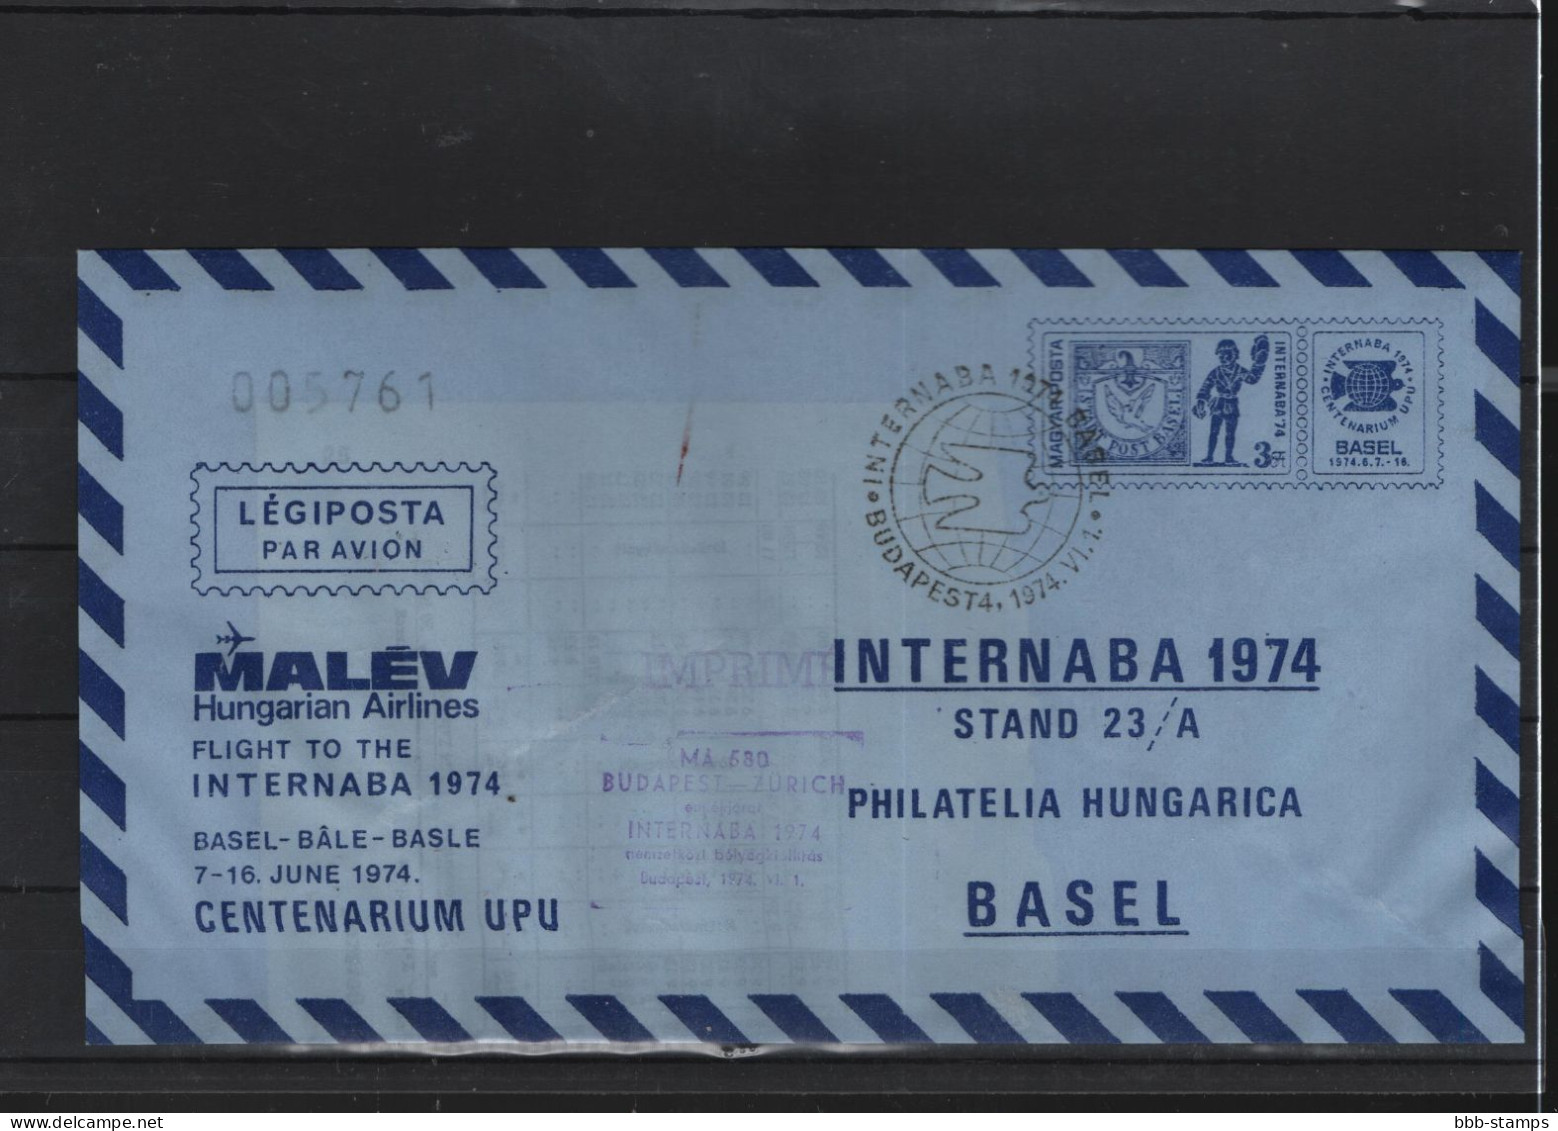 Schweiz Luftpost FFC Malev 4.4.1972 Budapest - Basel - Erst- U. Sonderflugbriefe